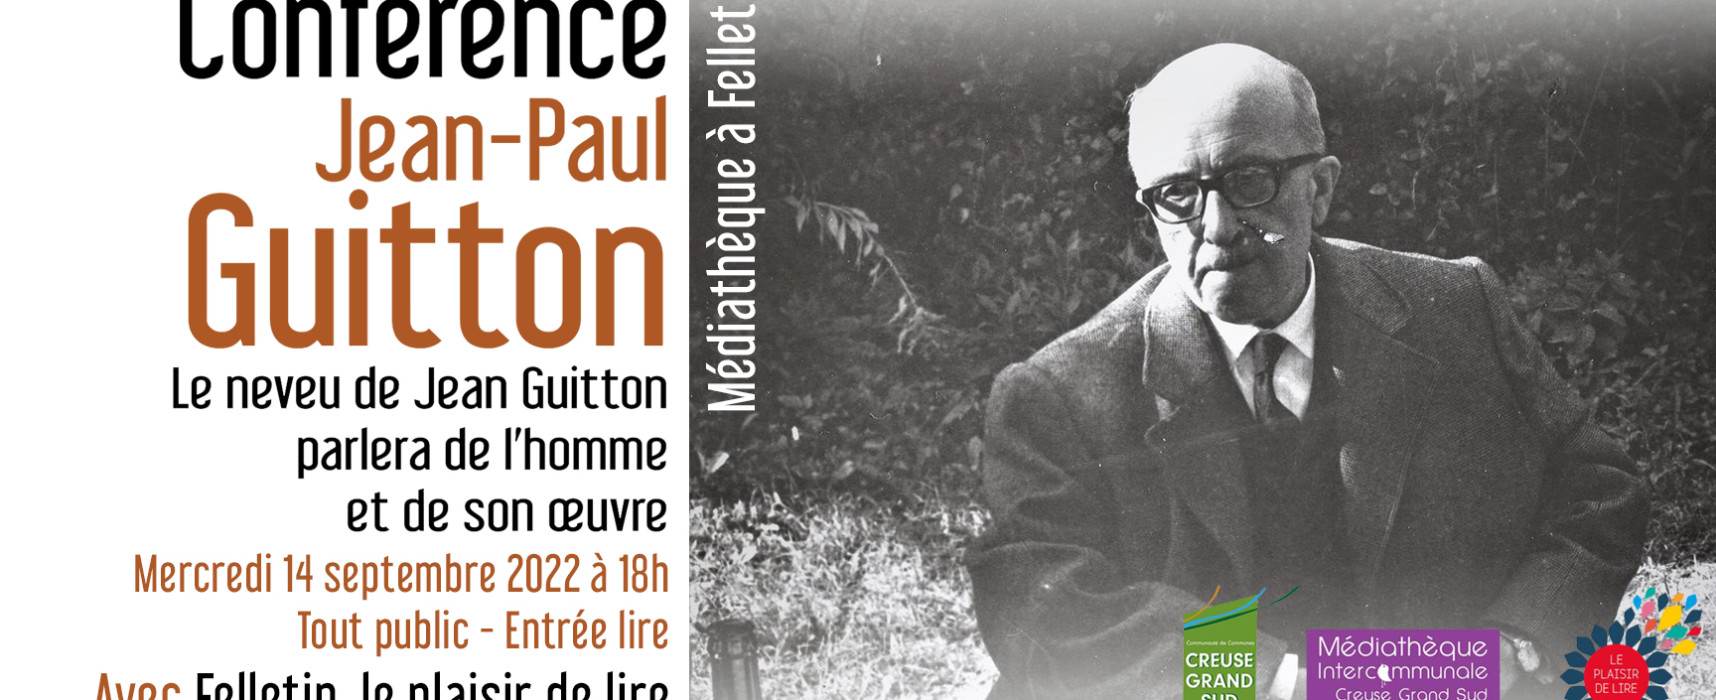 [Médiathèque] Conférence de Jean-Paul GUITTON – Mercredi 14 septembre 2022 à 18h – #Felletin